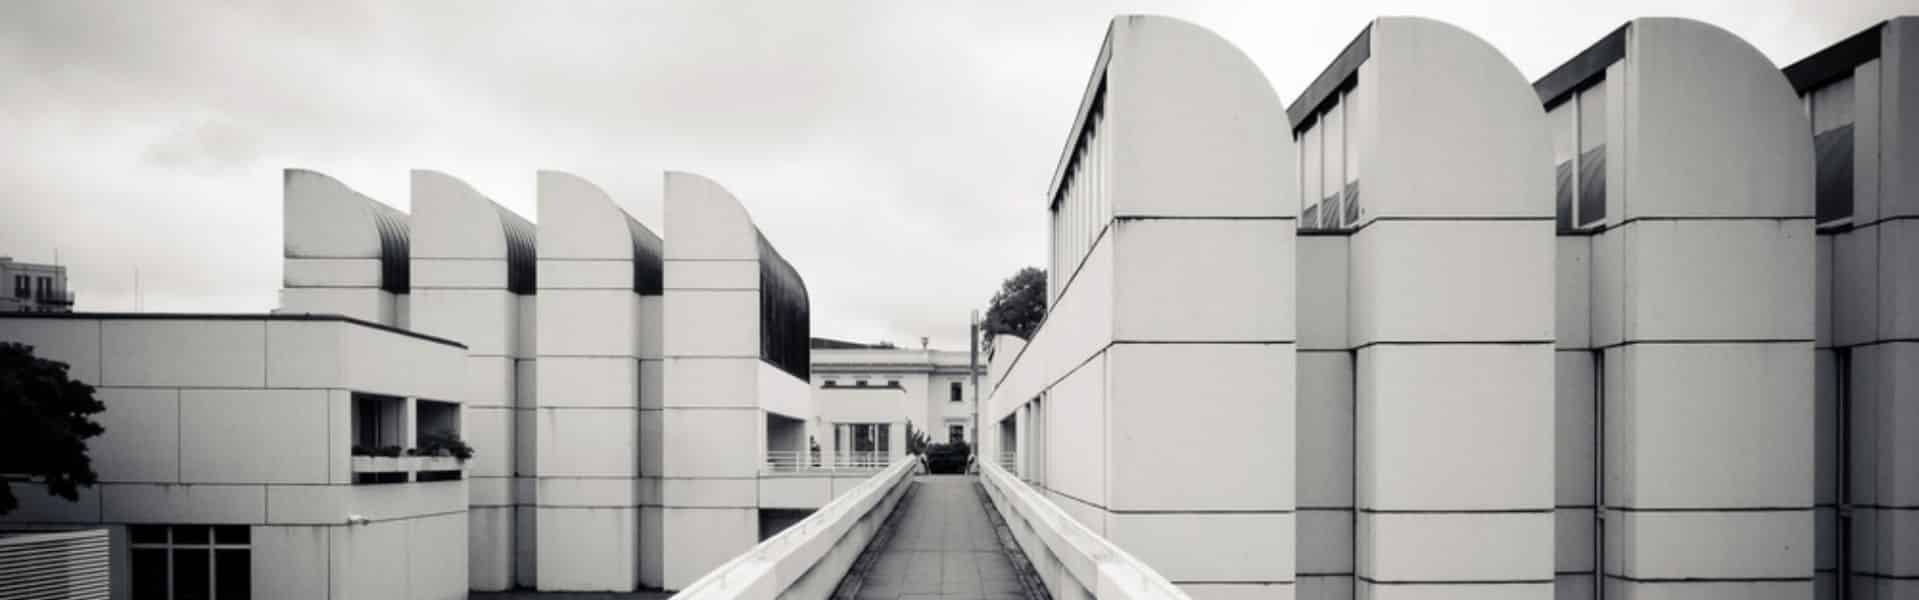 diseños de casa minimalista escuela Bauhaus